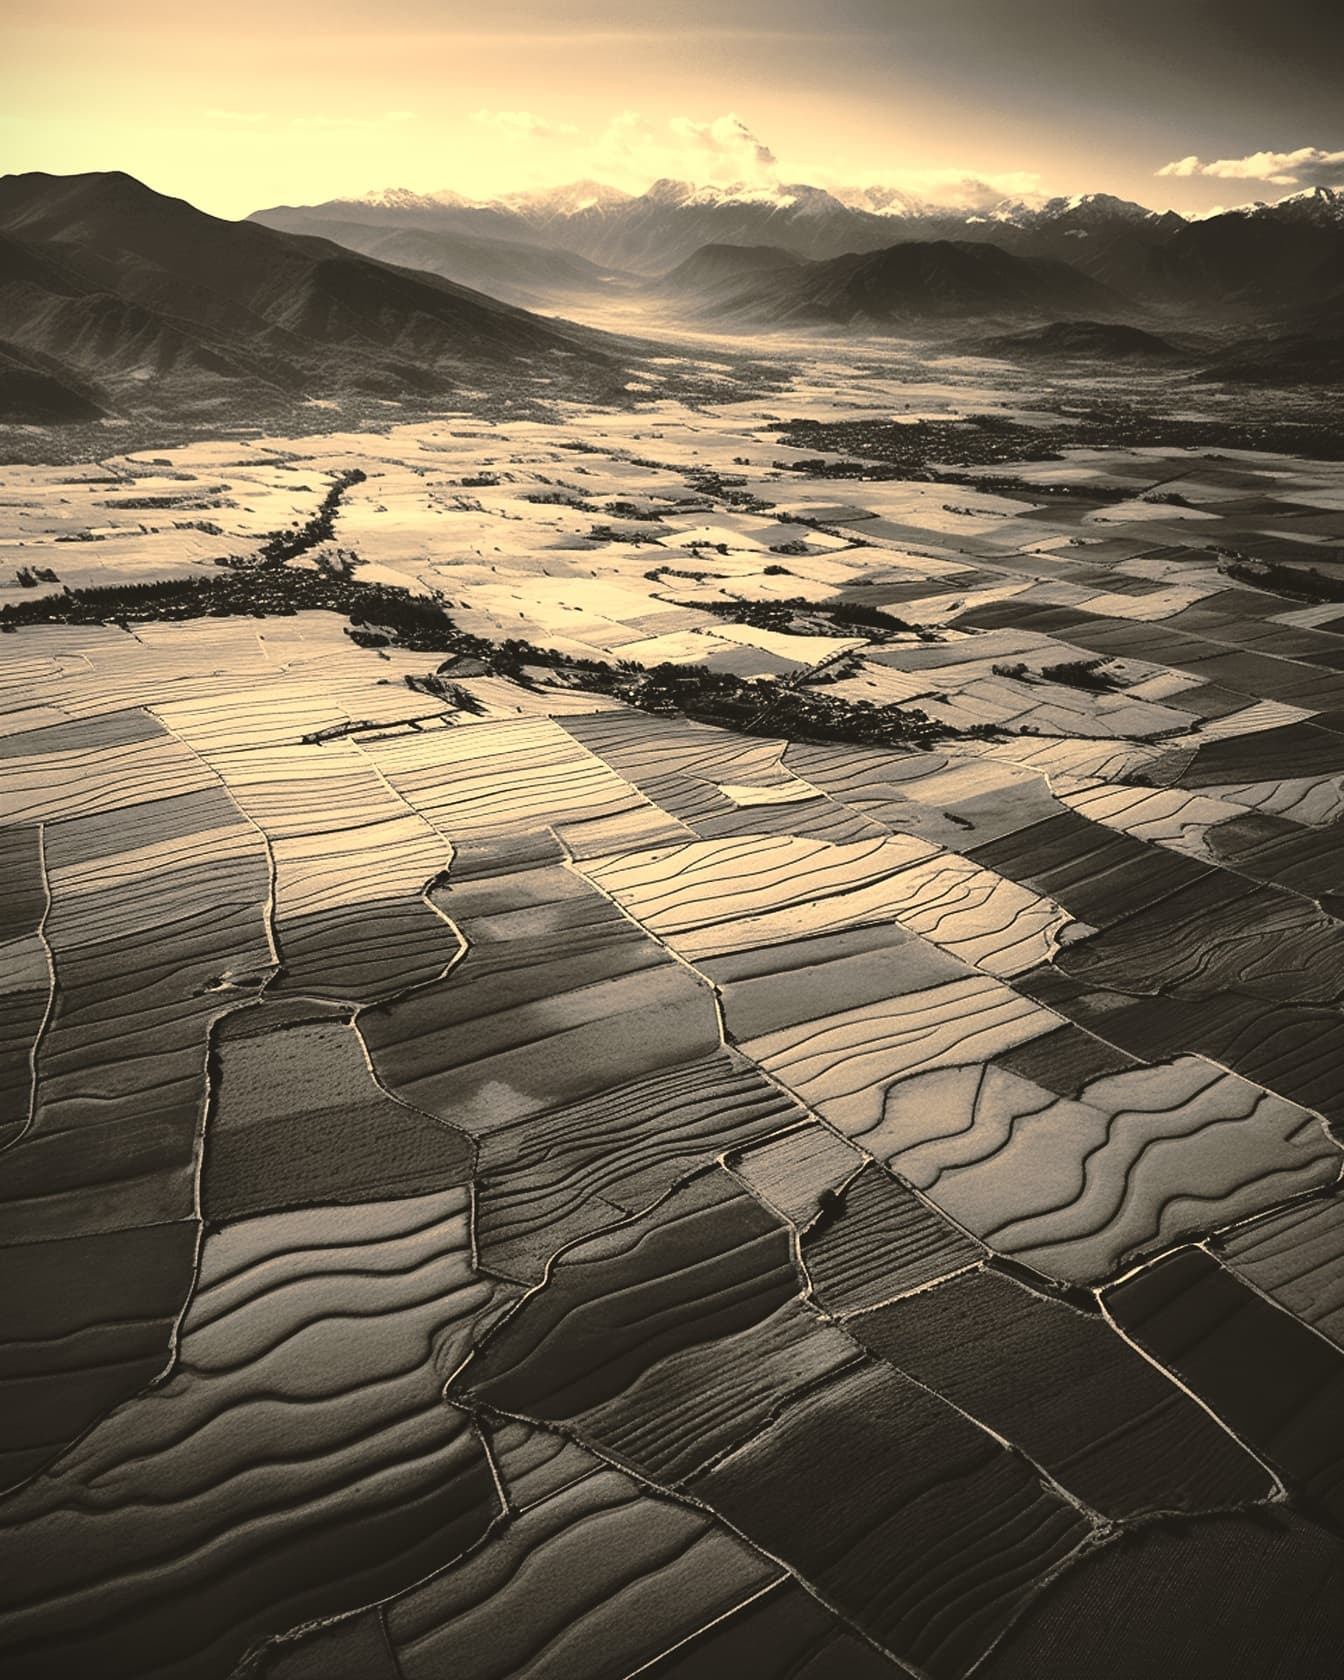 Sepia zračna fotografija poljoprivrednih polja u dolini